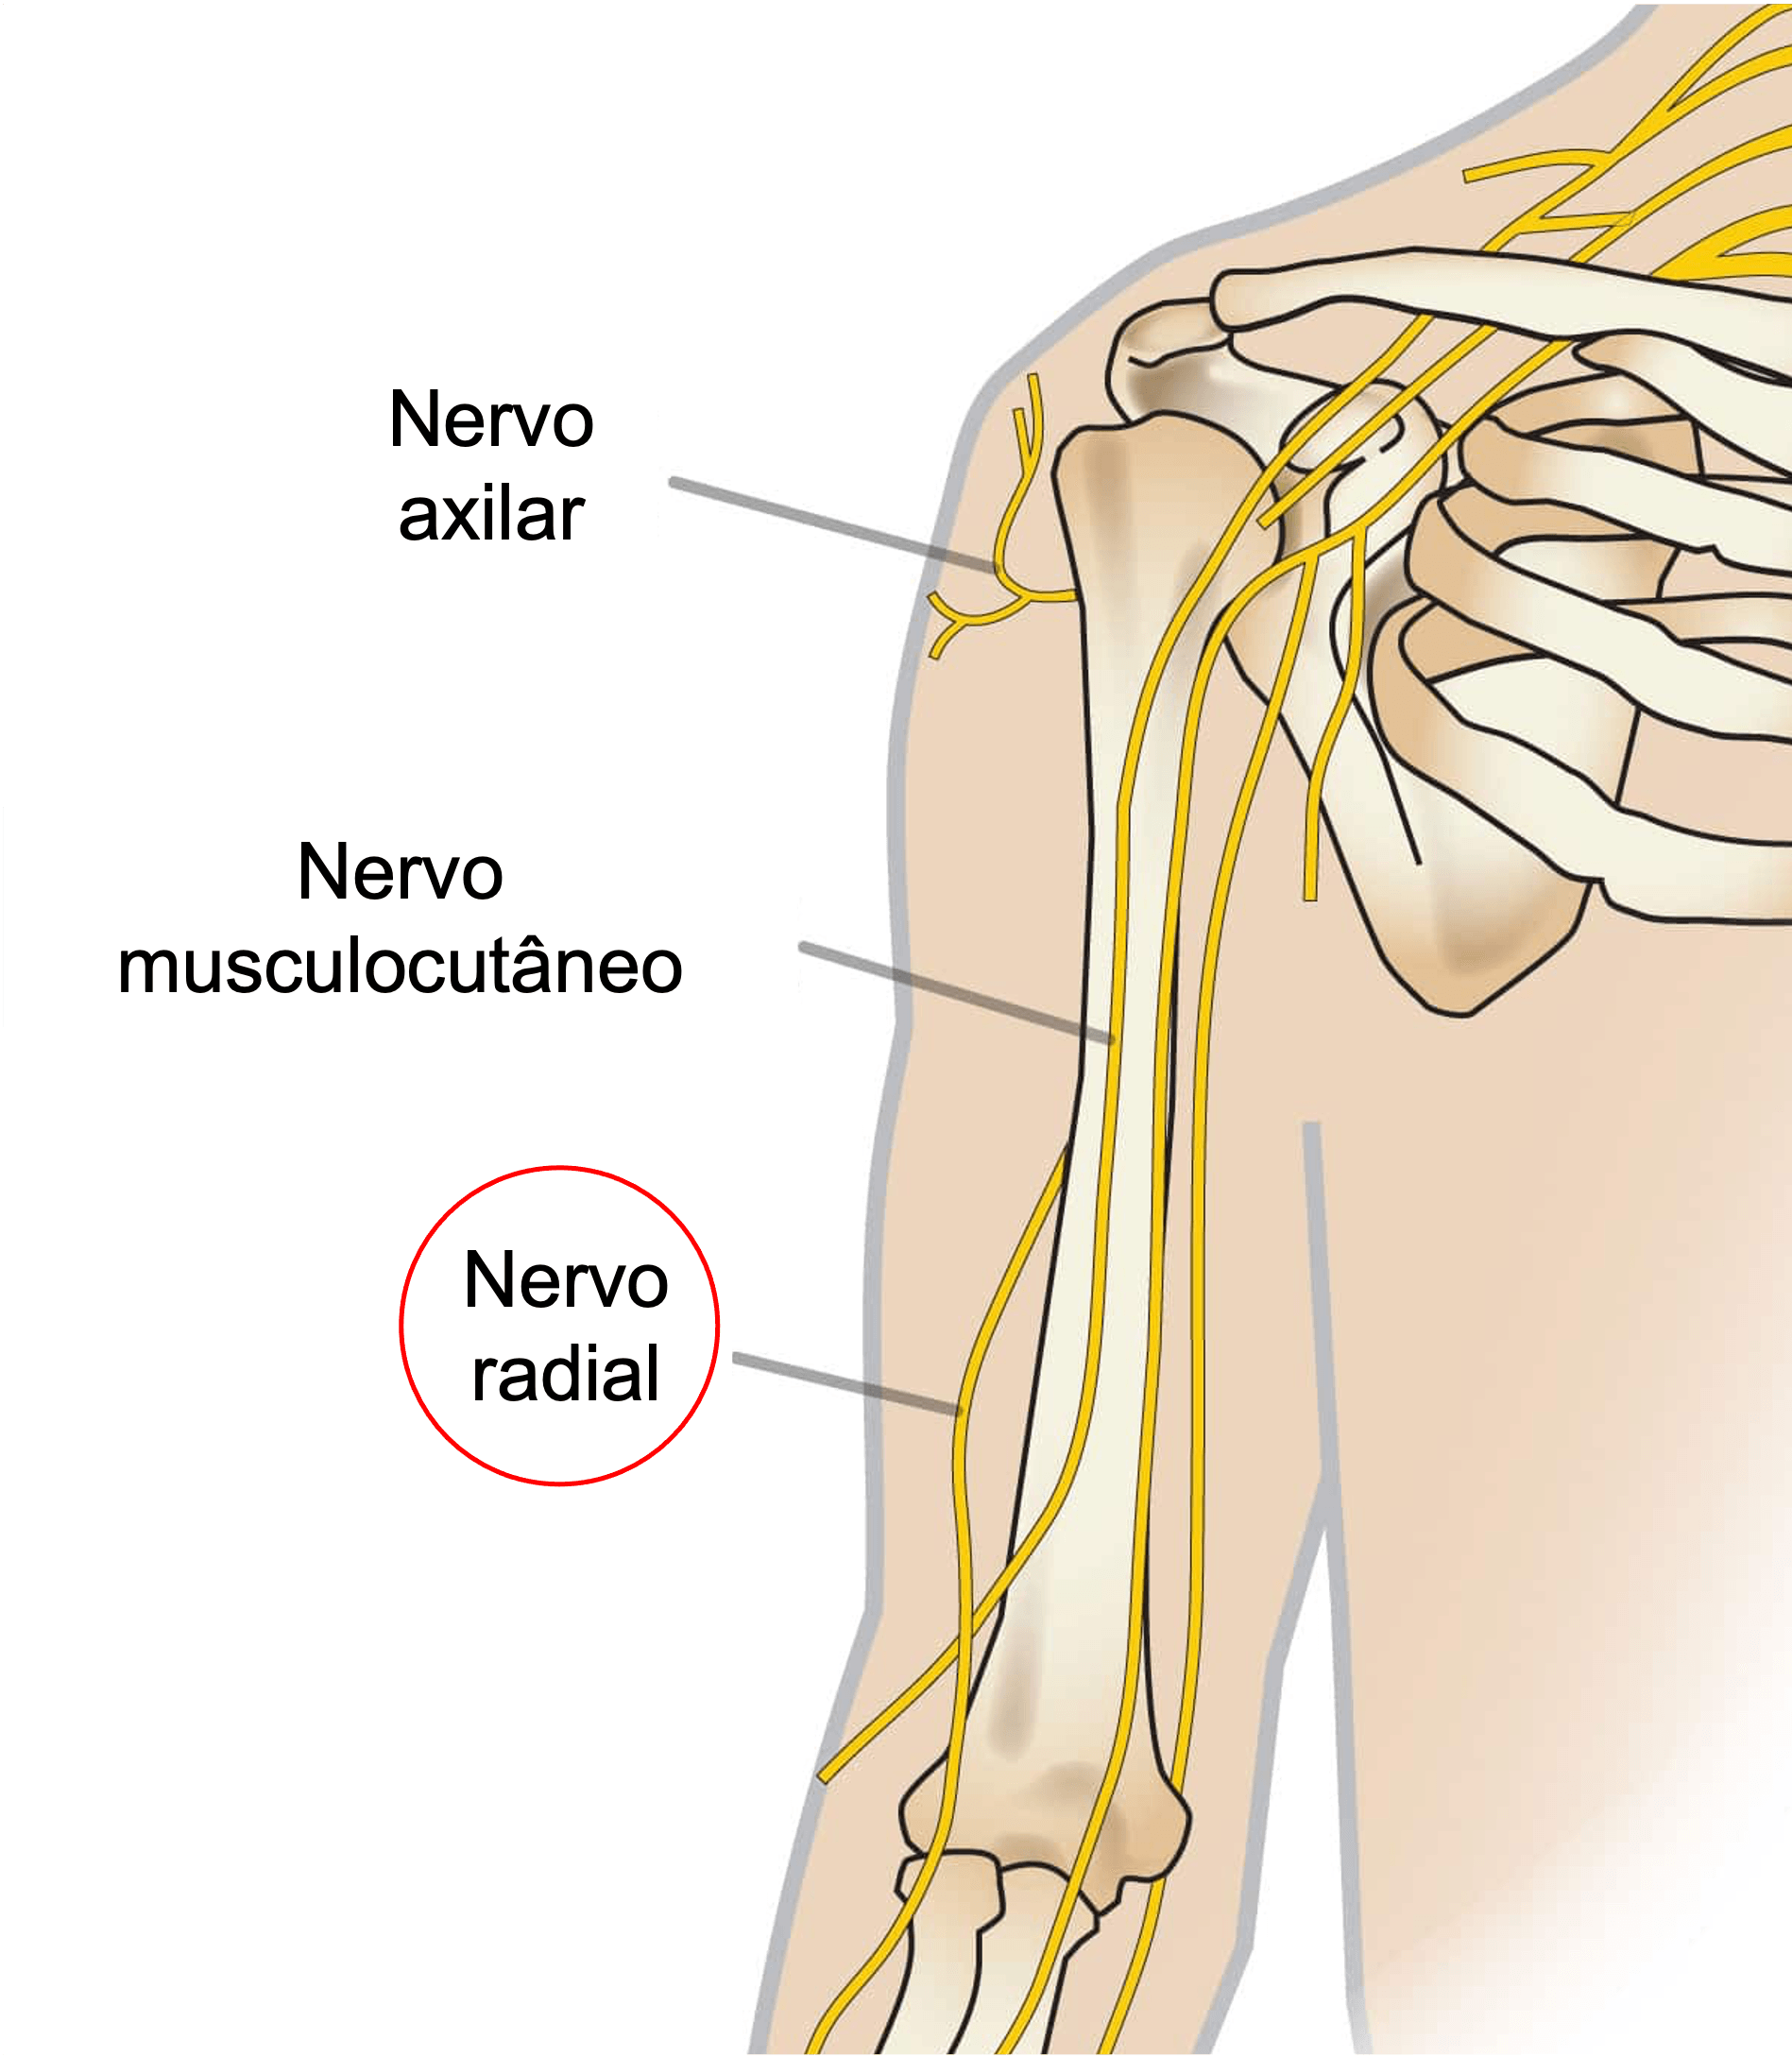 Anatomia do nervo radial no braço